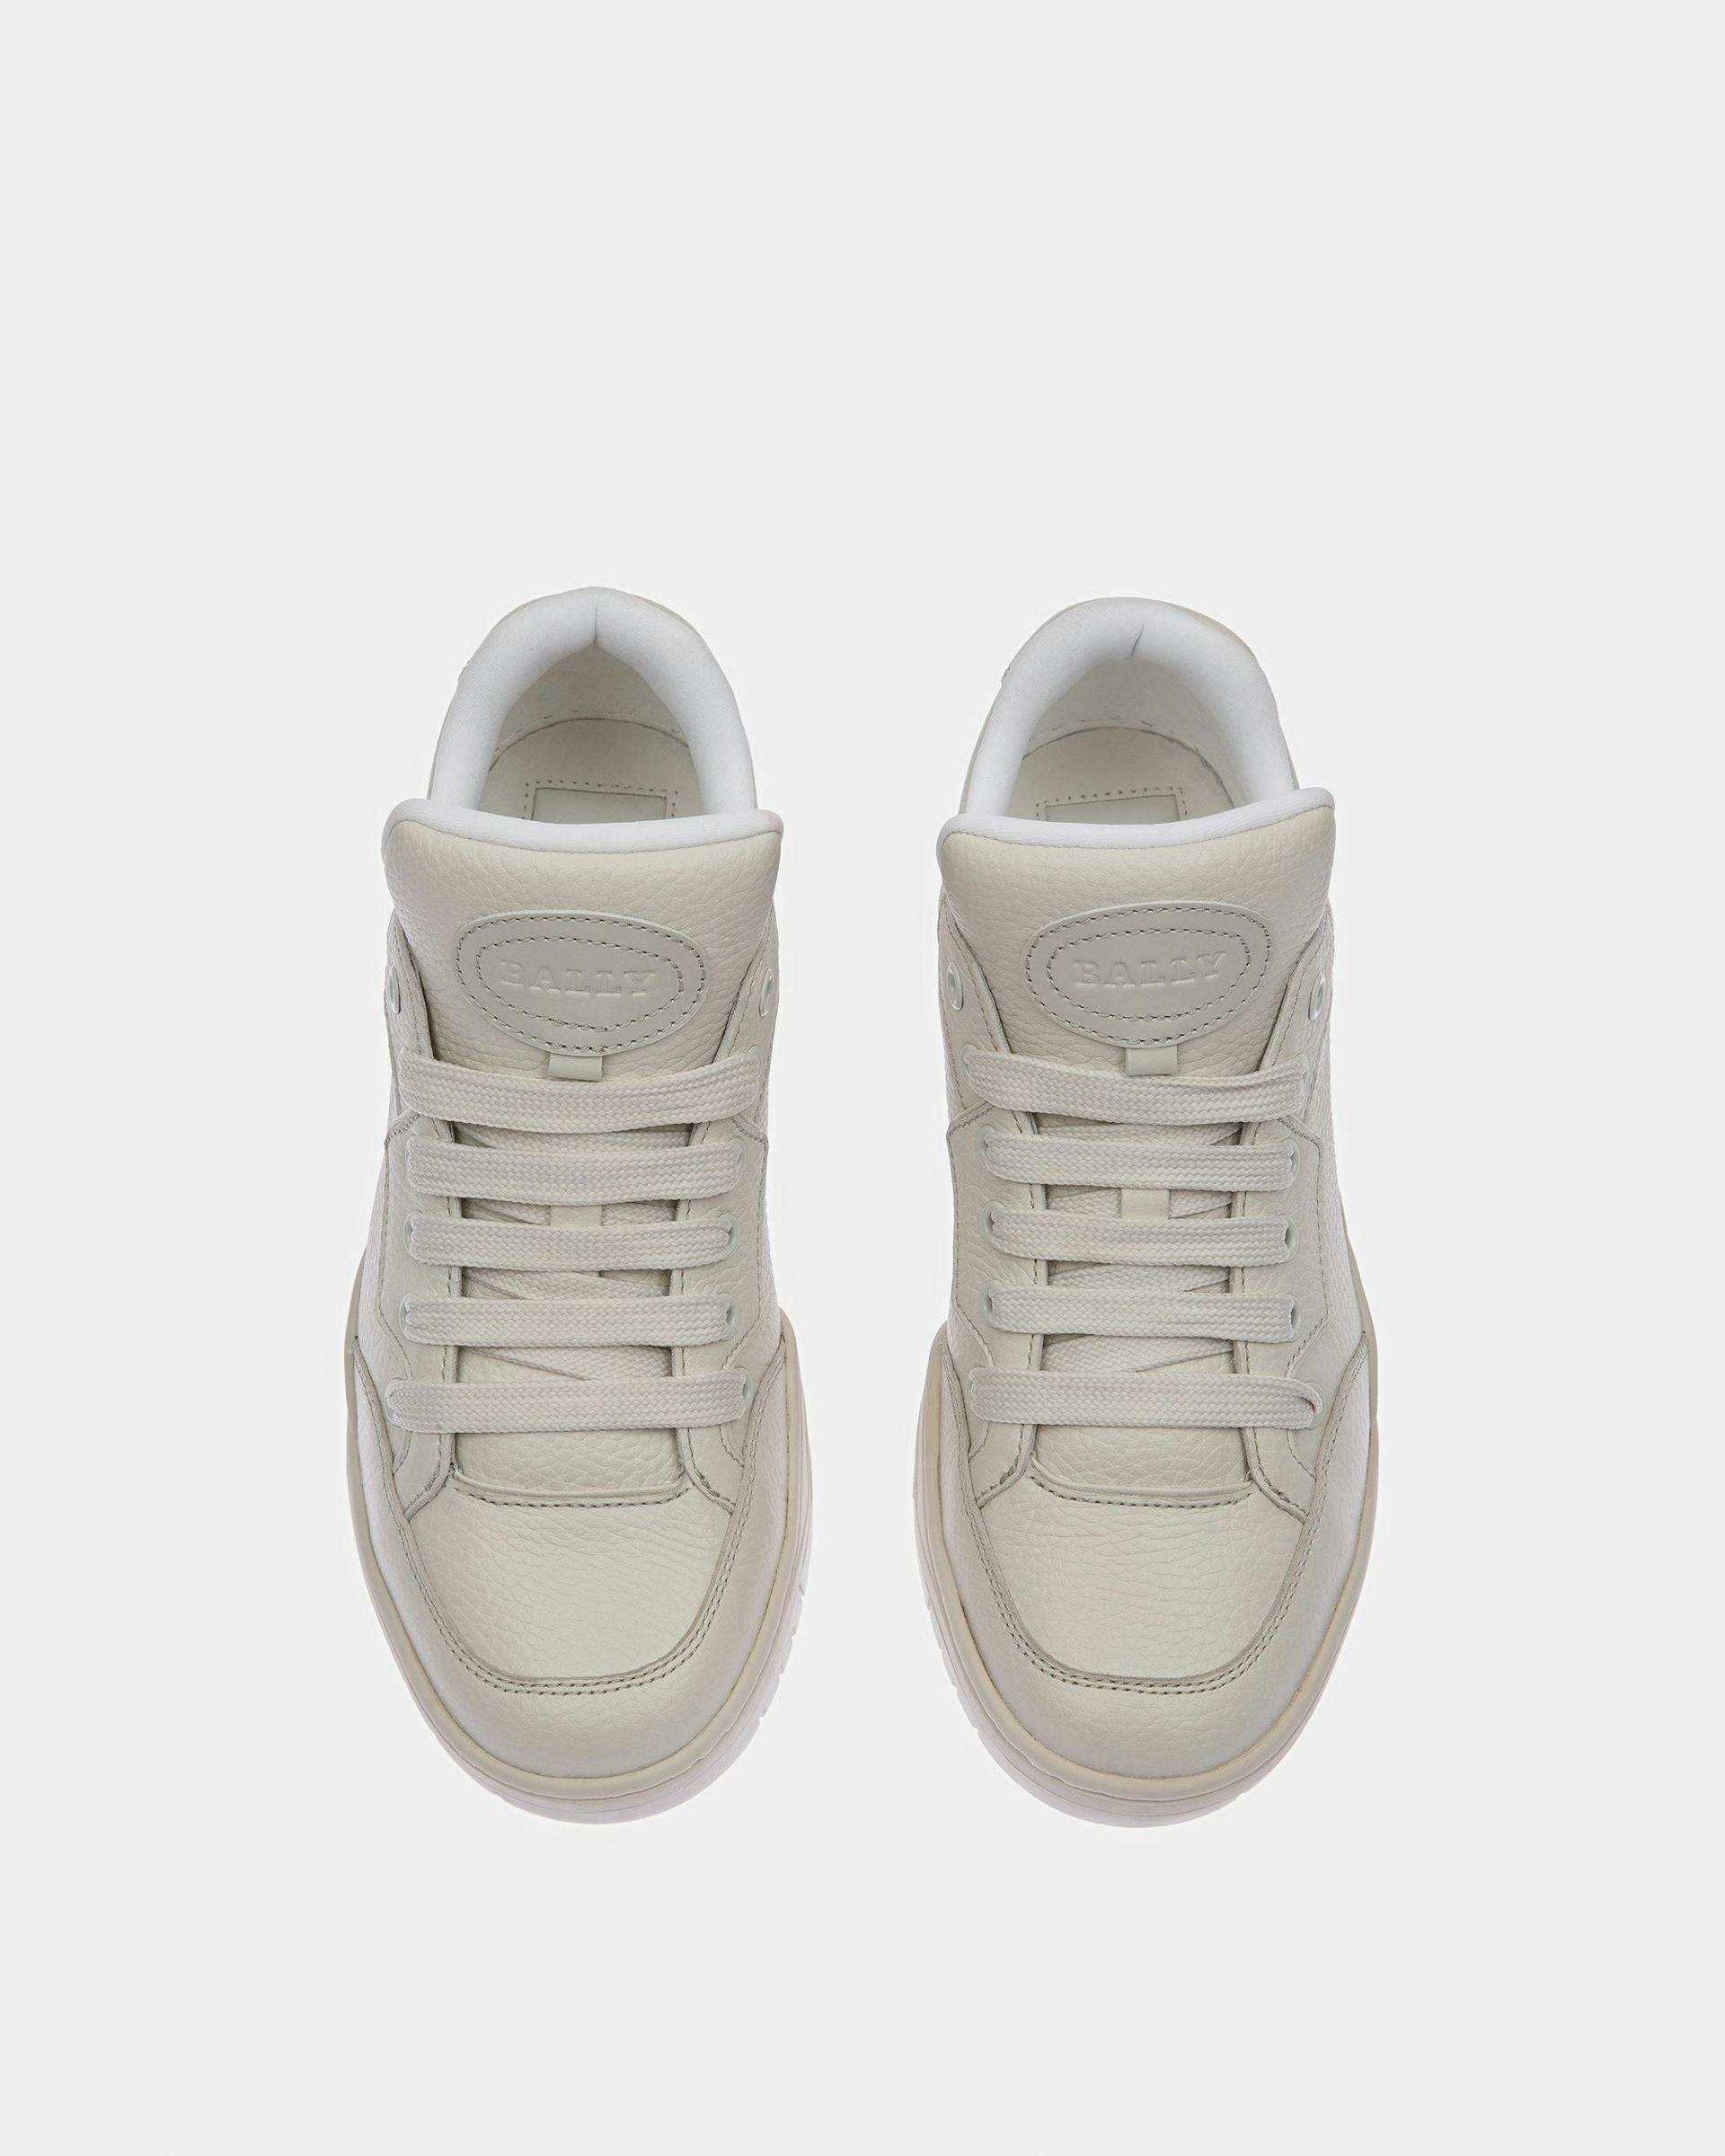 Kiro Leather Sneakers In Dusty White - Women's - Bally - 02